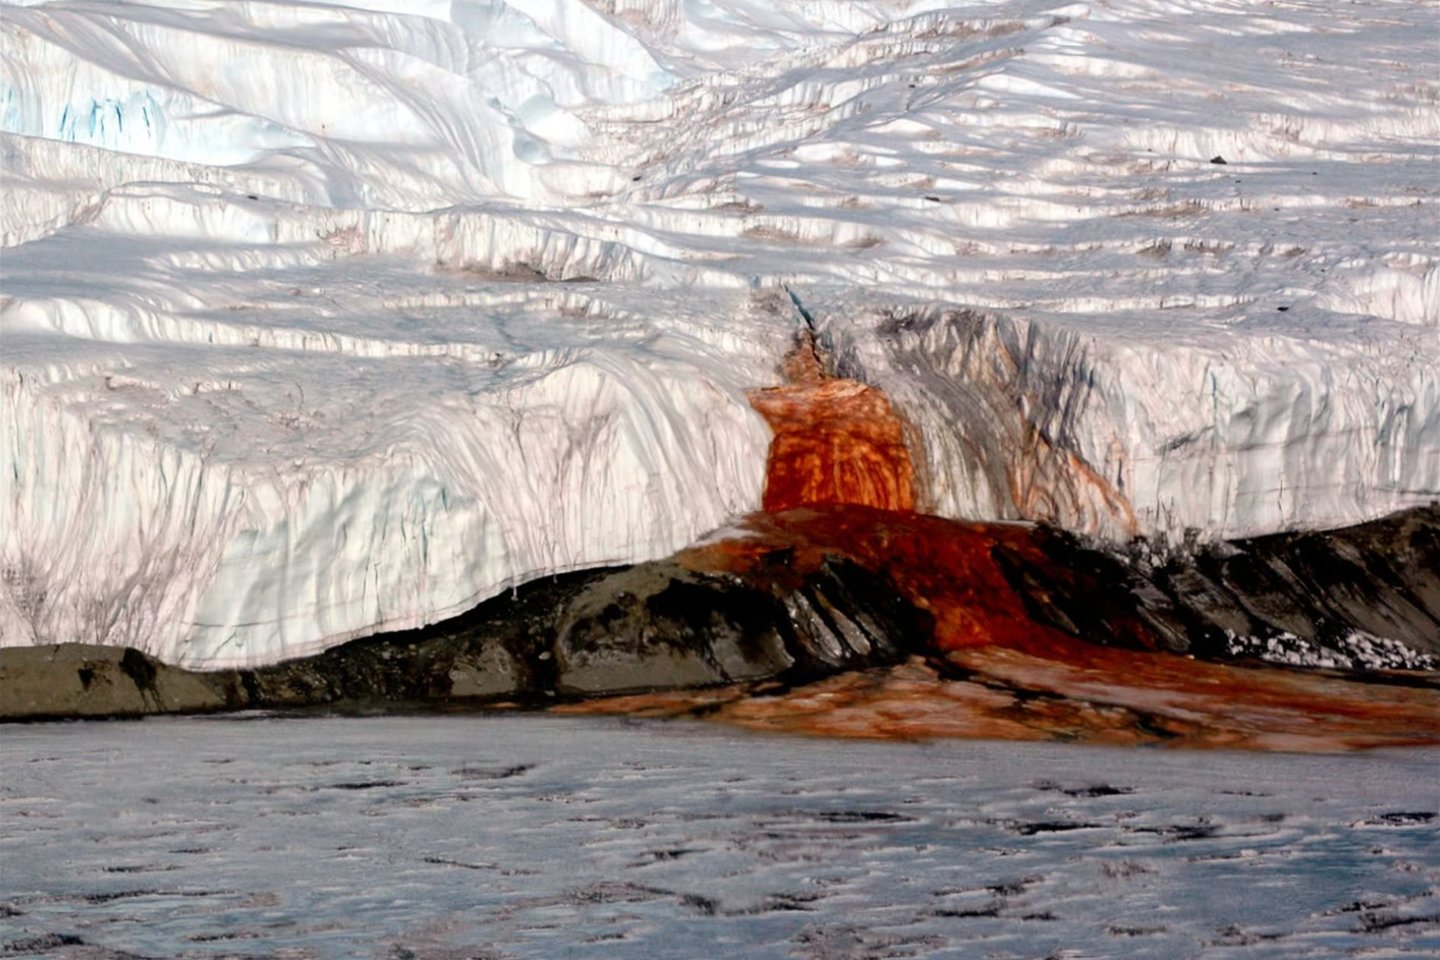 Mokslininkų komanda teigia išsprendusi ilgai tvyrojusią paslaptį, kodėl krioklio vanduo yra raudonos spalvos.<br>Peterio Rejceko nuotr.